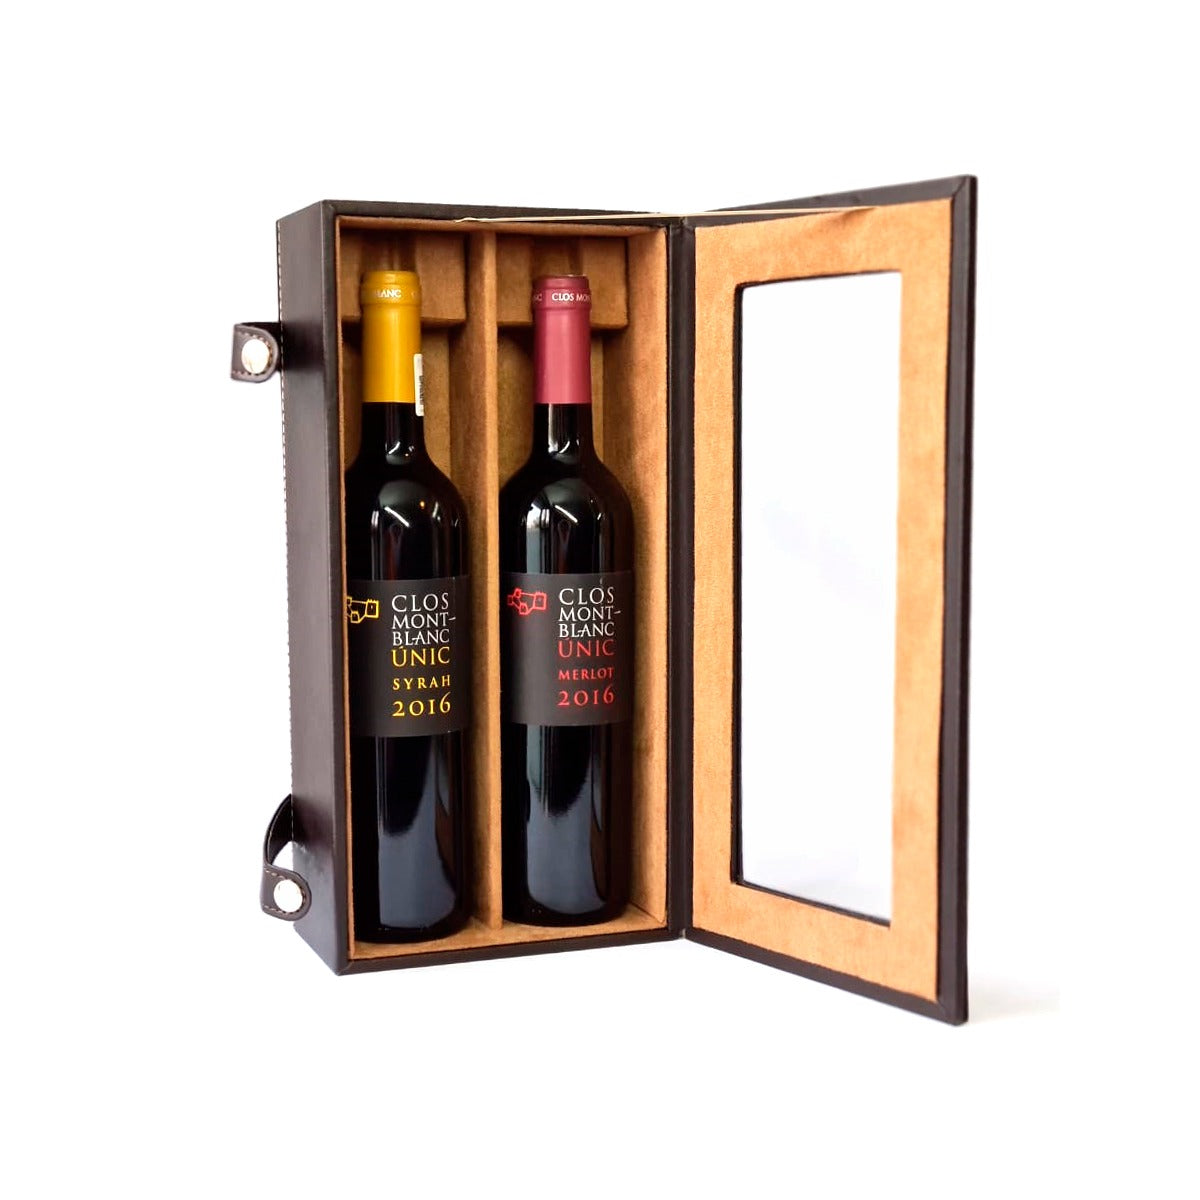 Regalo Empresarial De Vinos Clos Montblanc con Estuche Premium